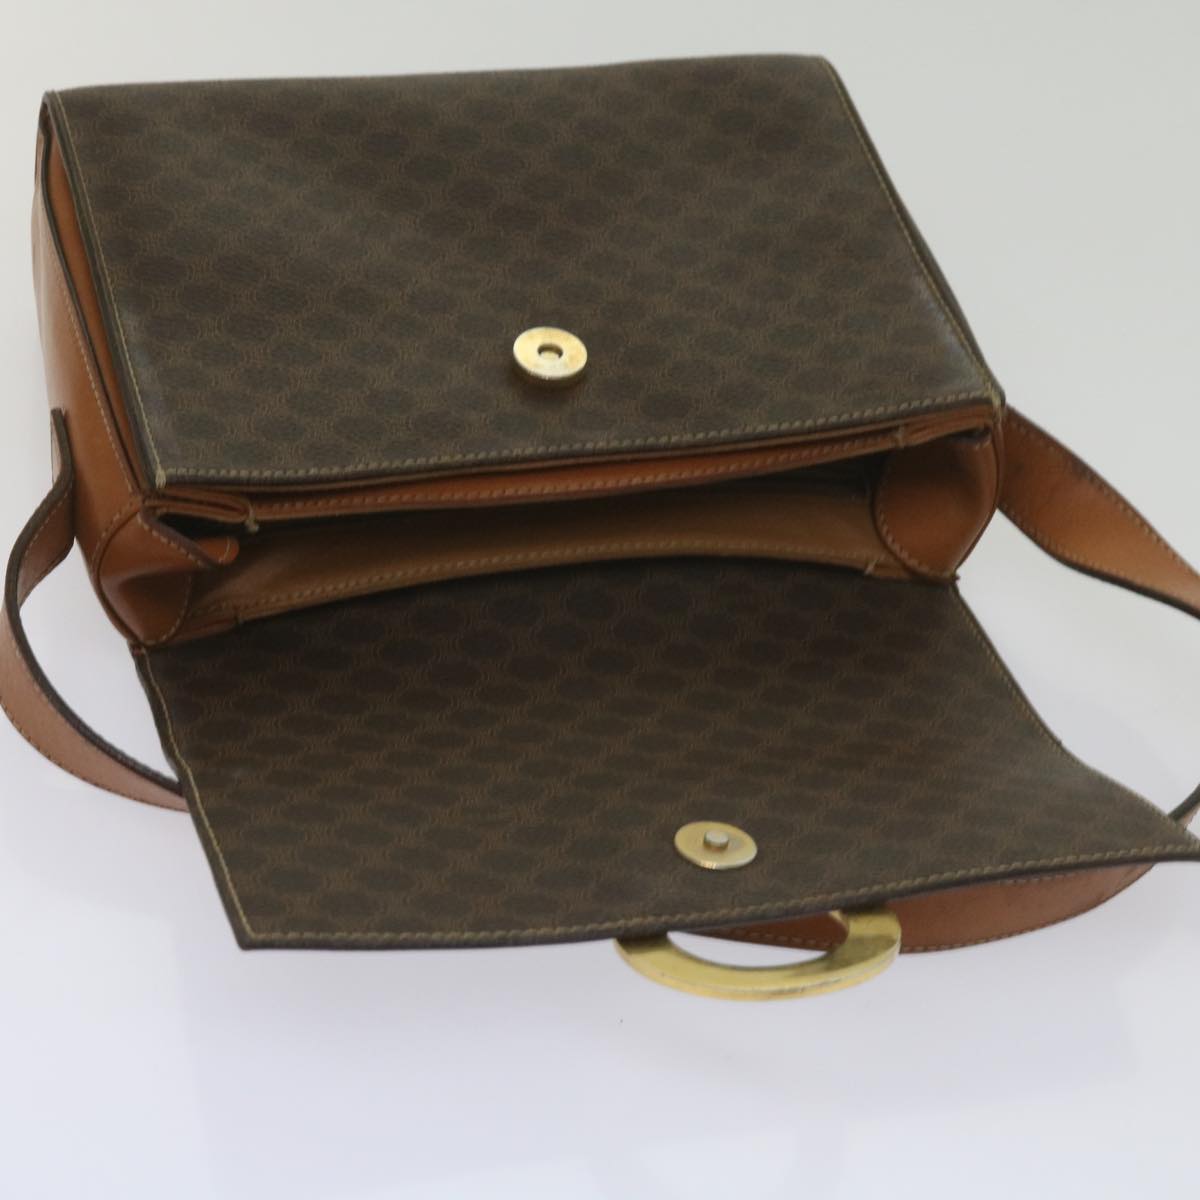 CELINE Macadam Canvas Shoulder Bag PVC Leather Brown Auth 60985